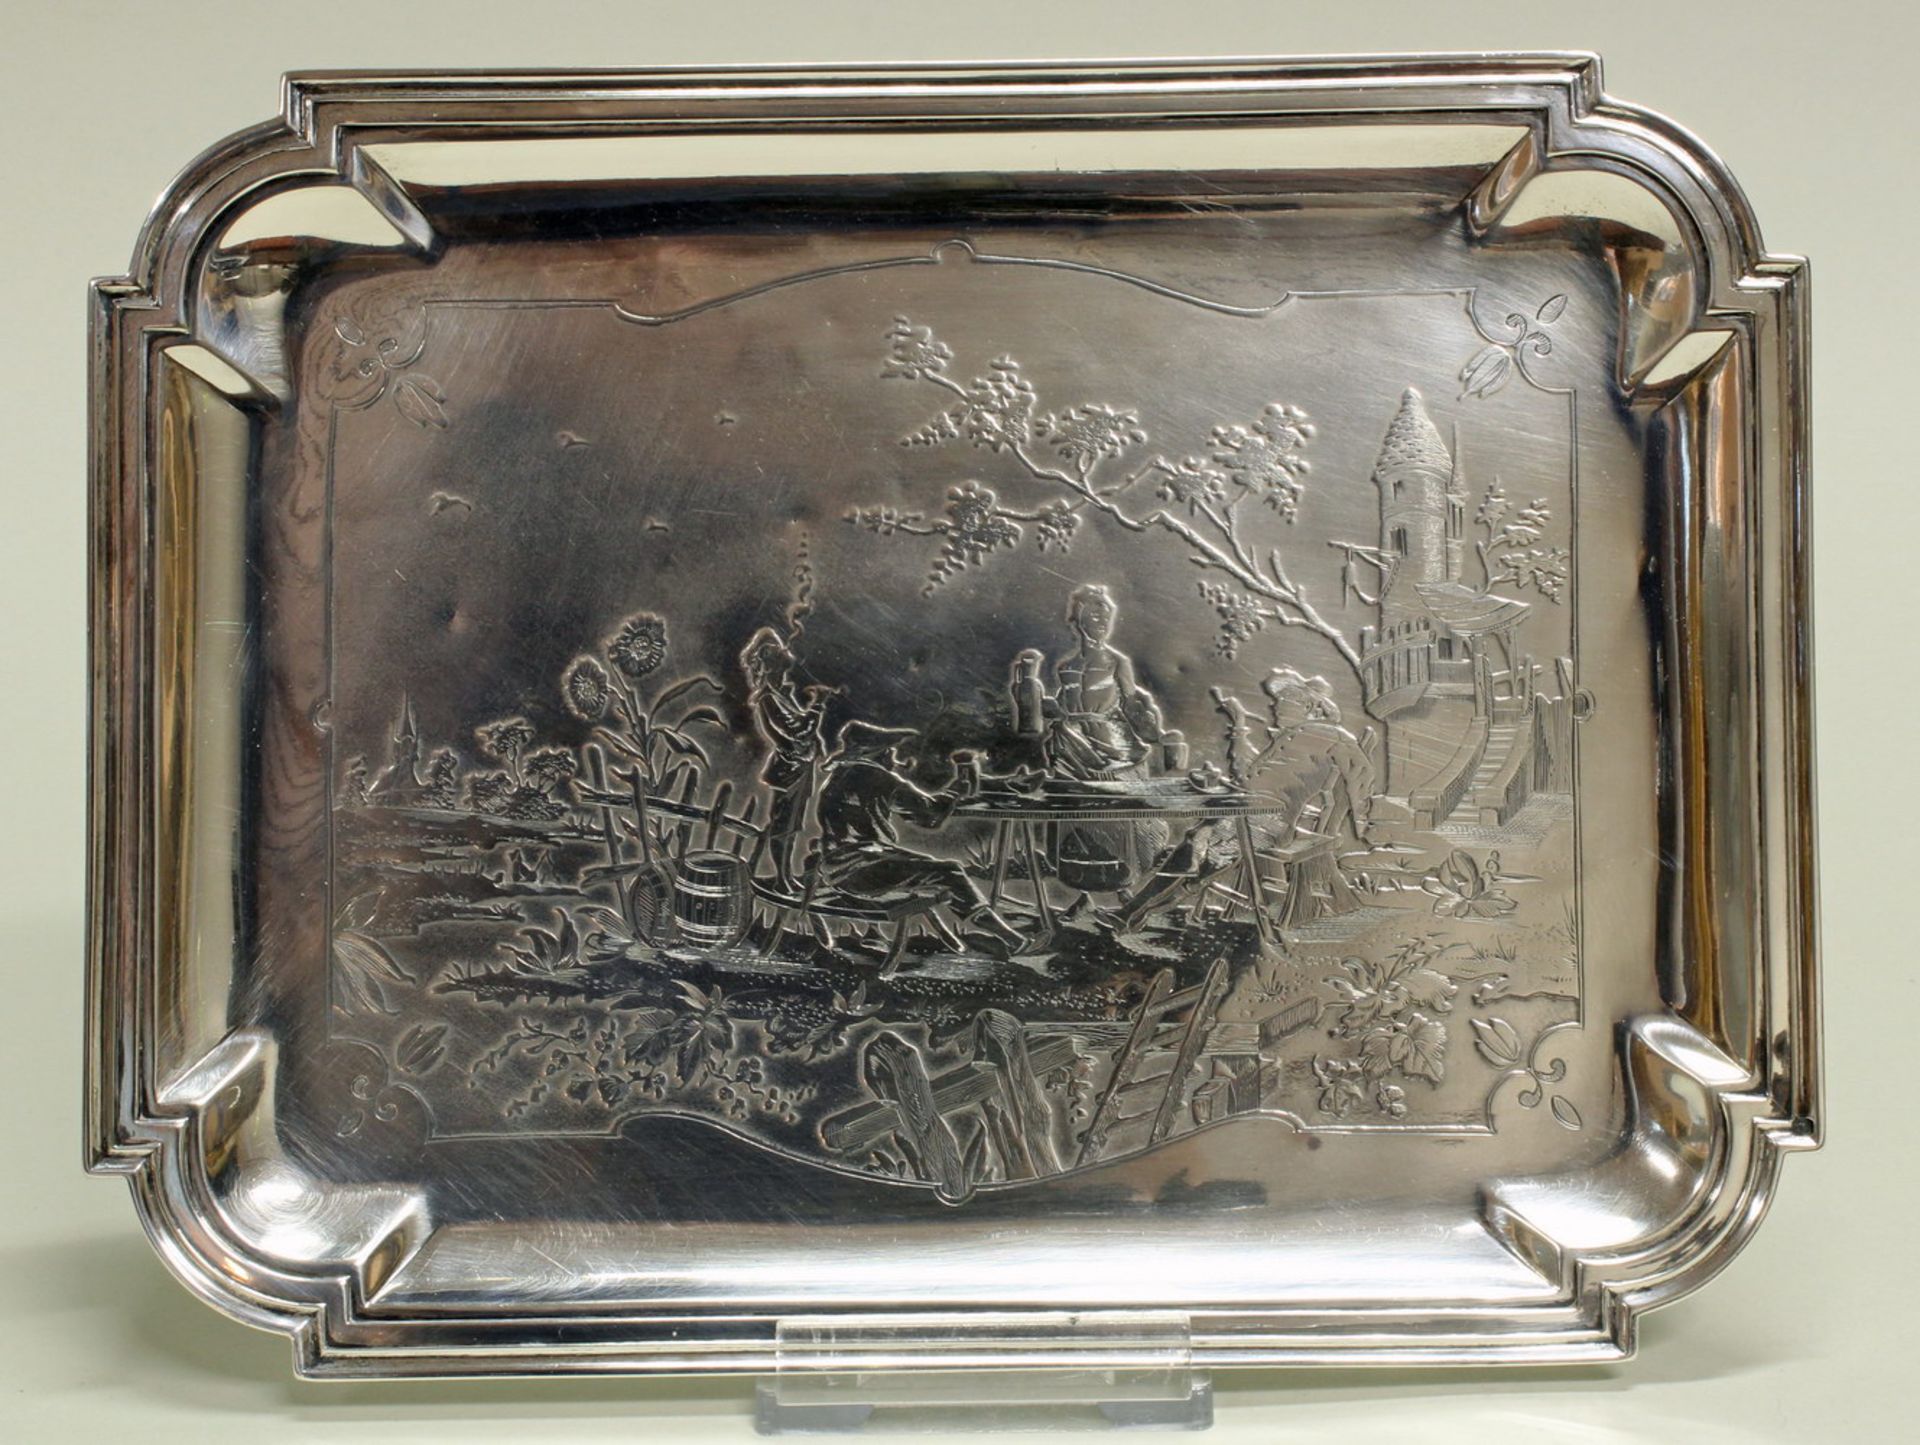 Tablett, Silber 925, Frankreich, rechteckig, Reliefdekor mit zechenden Bauern, profilierter Rand,